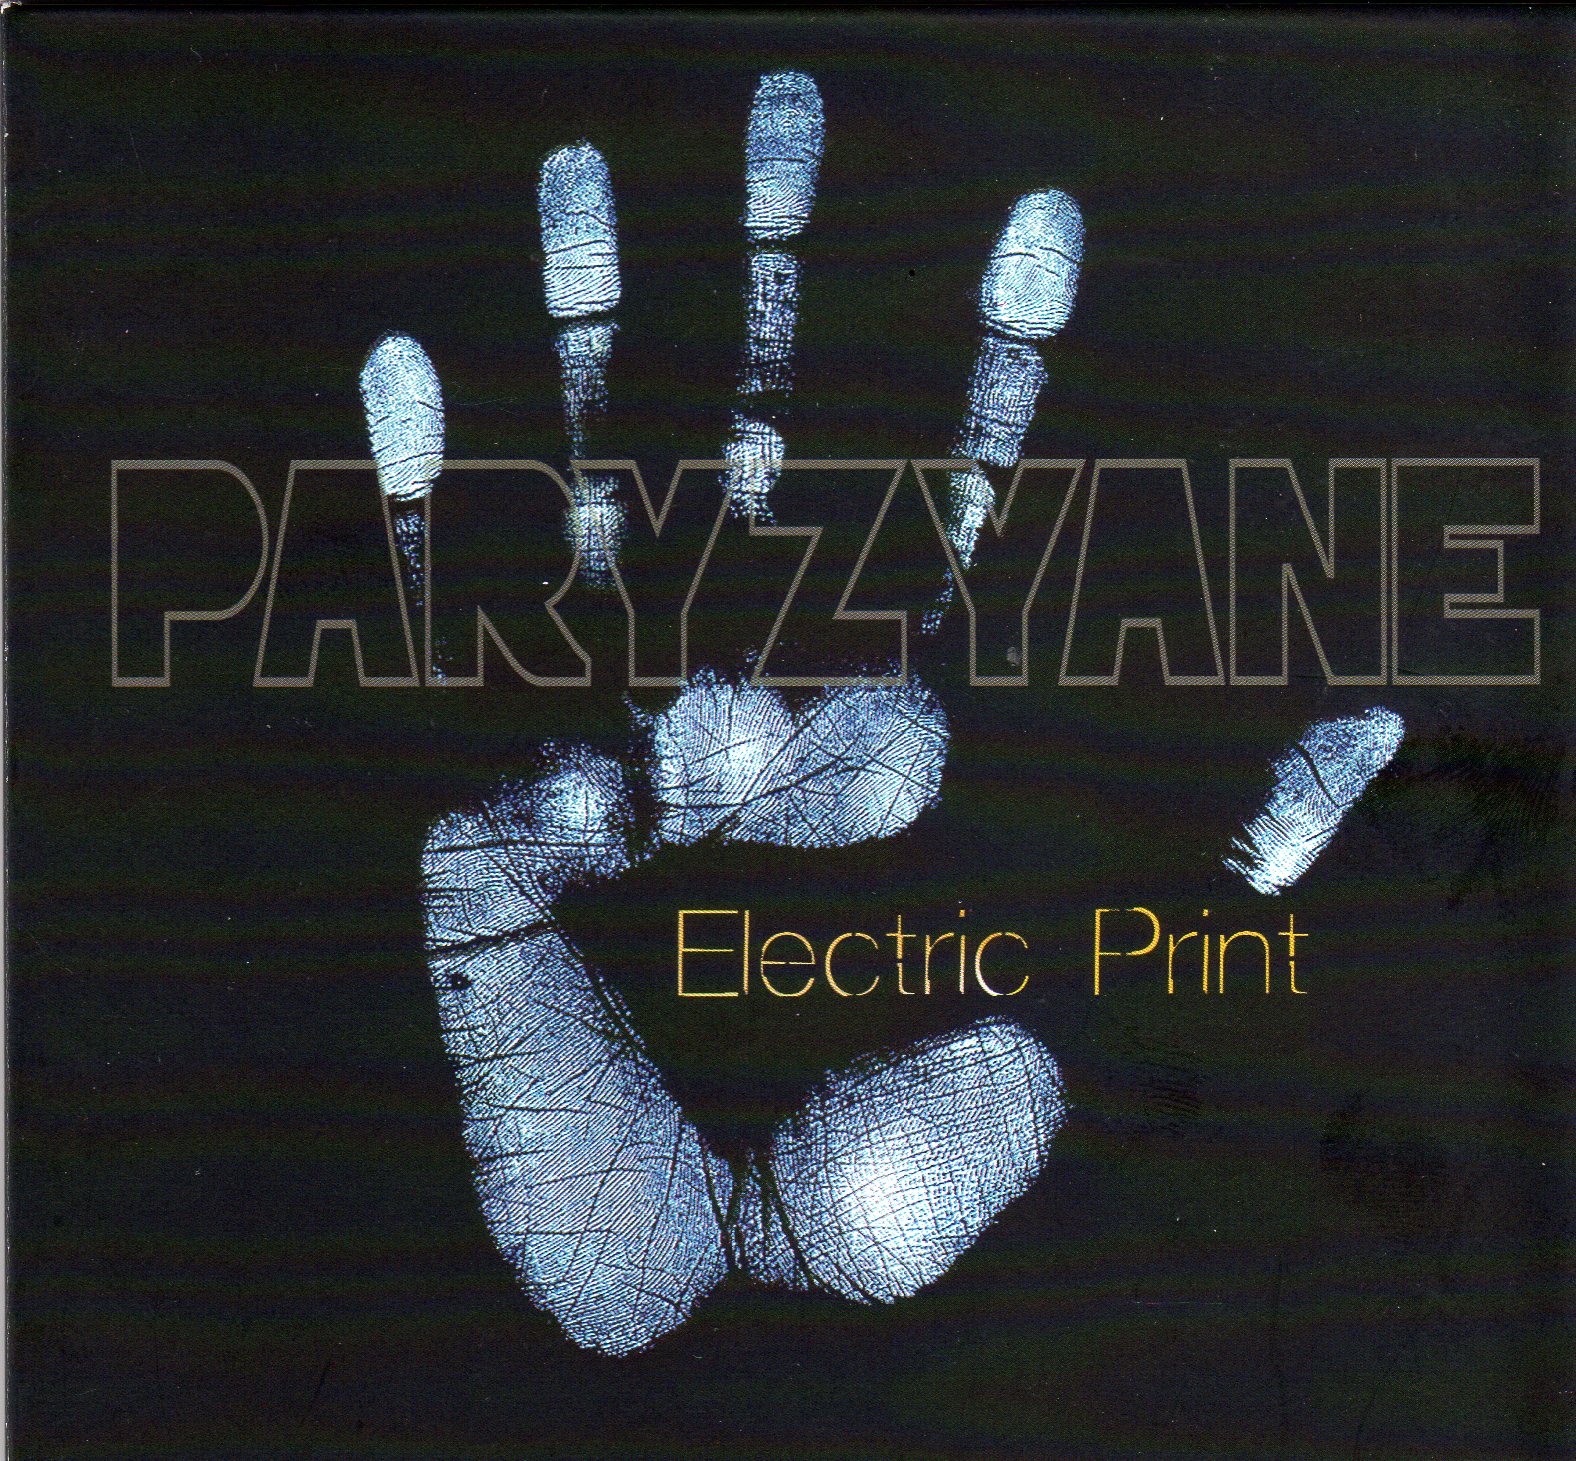 Paryzyane - Electric Print